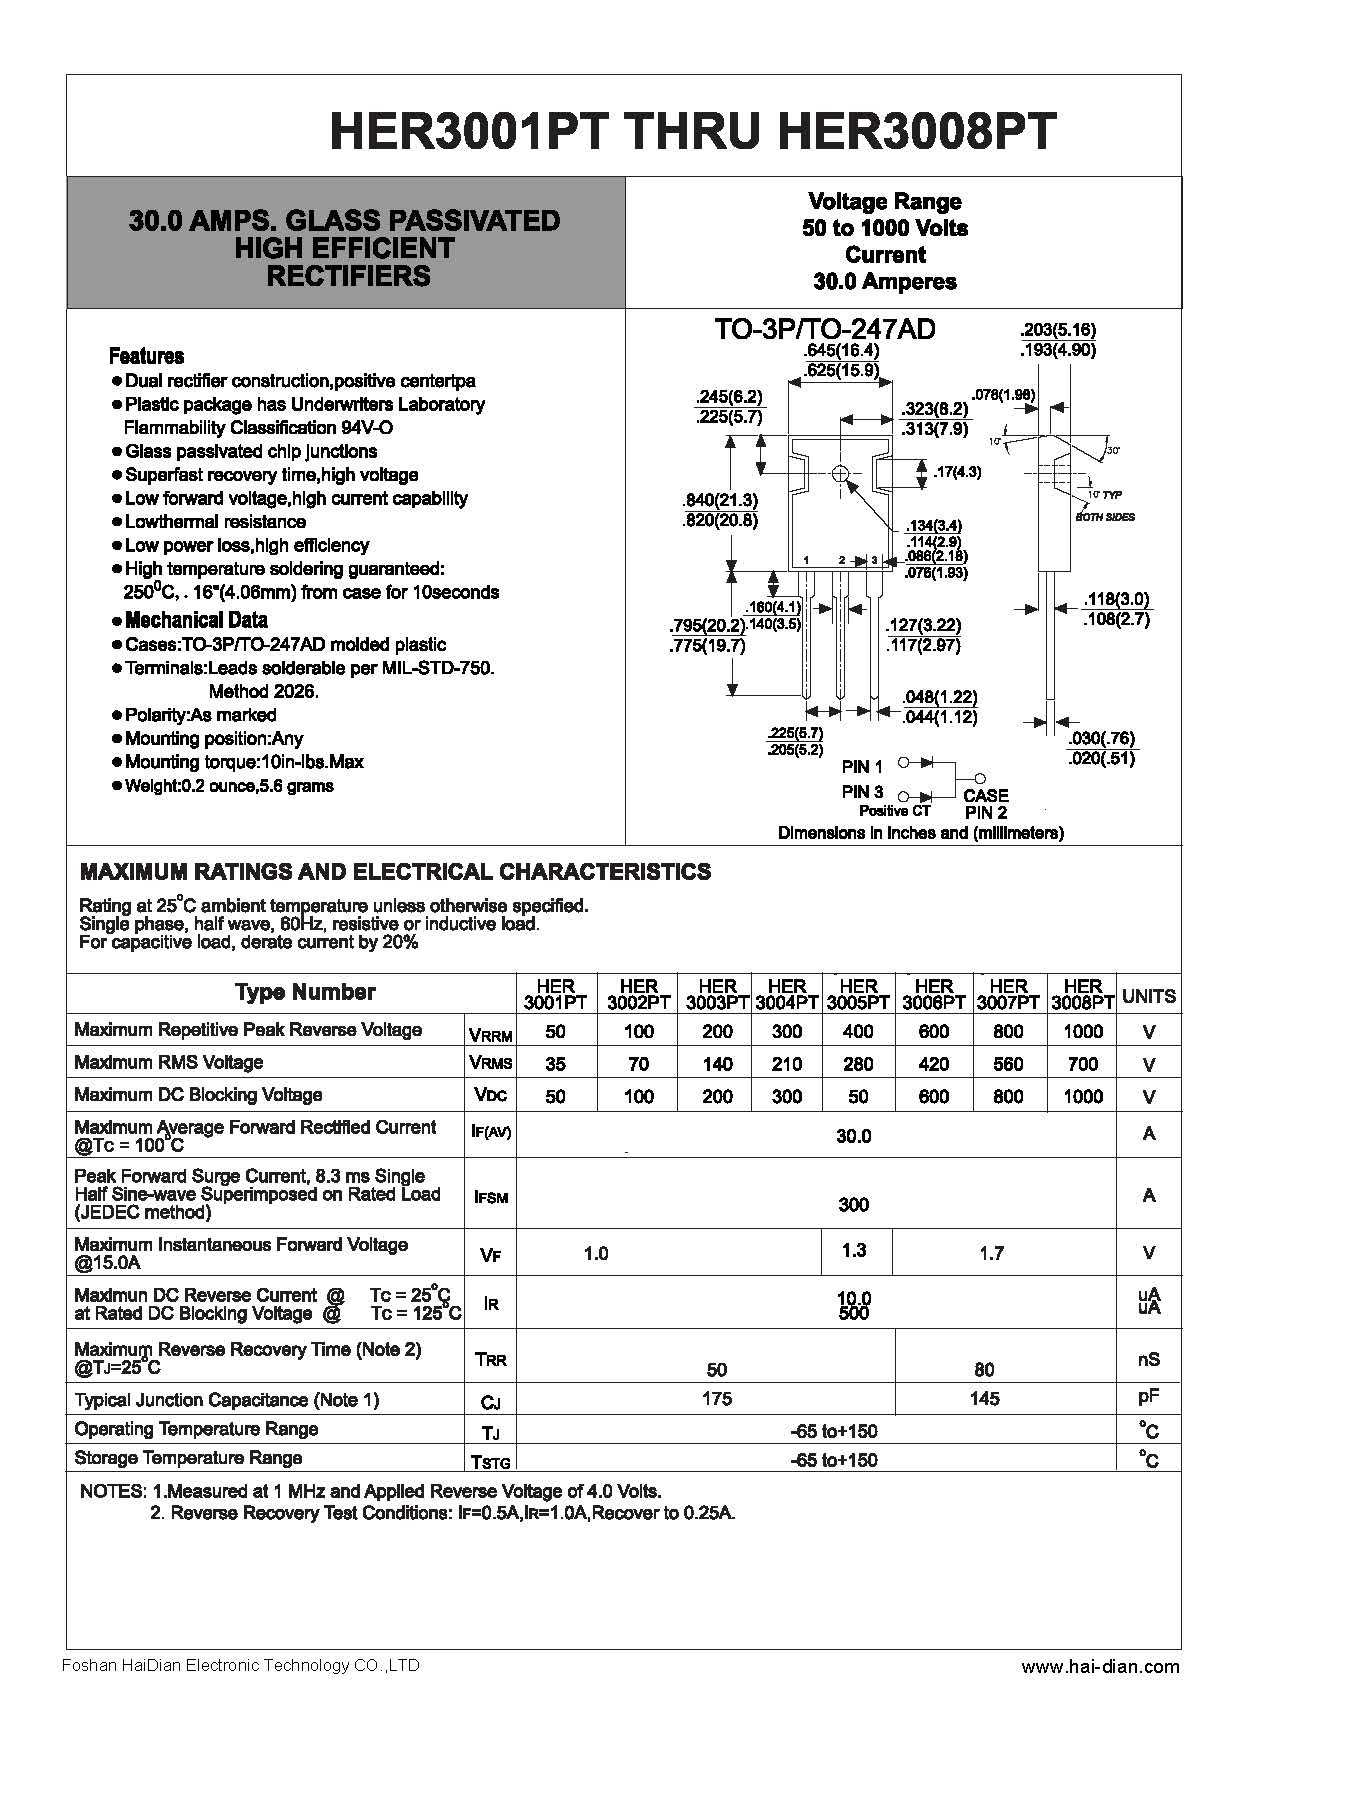 HER3002PT高效整流二极管-- 佛山海电电子科技有限公司